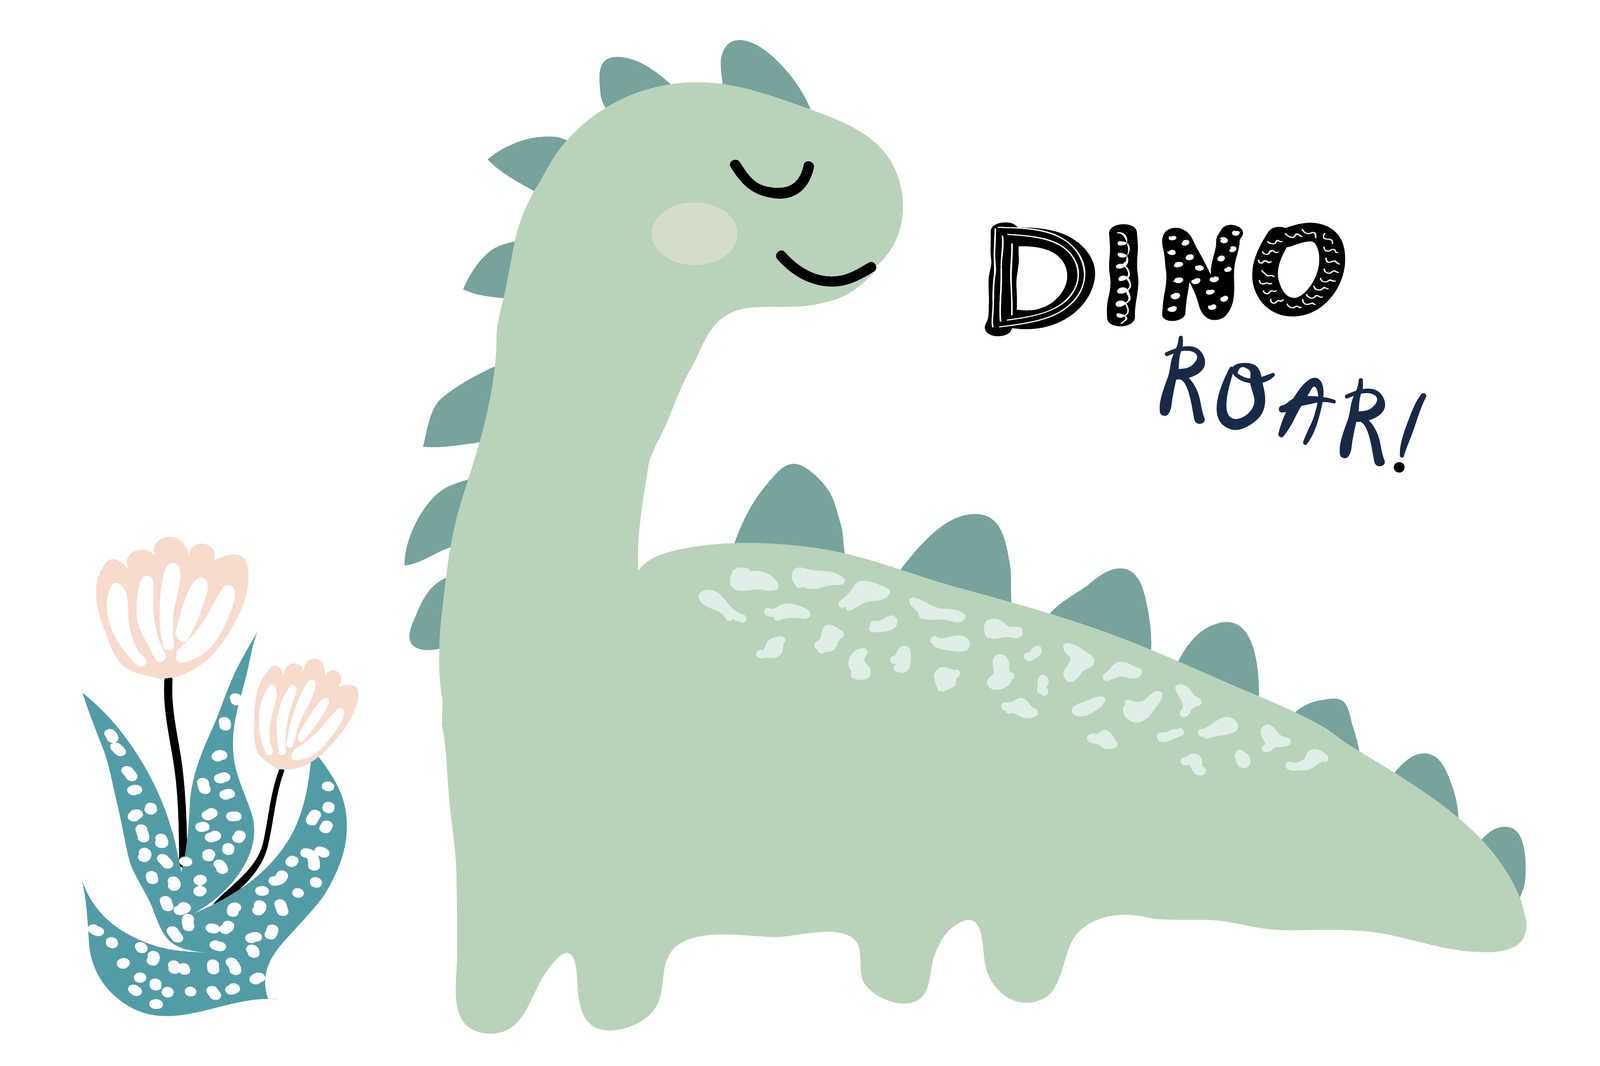             Leinwand mit gemaltem Dinosaurier – 120 cm x 80 cm
        